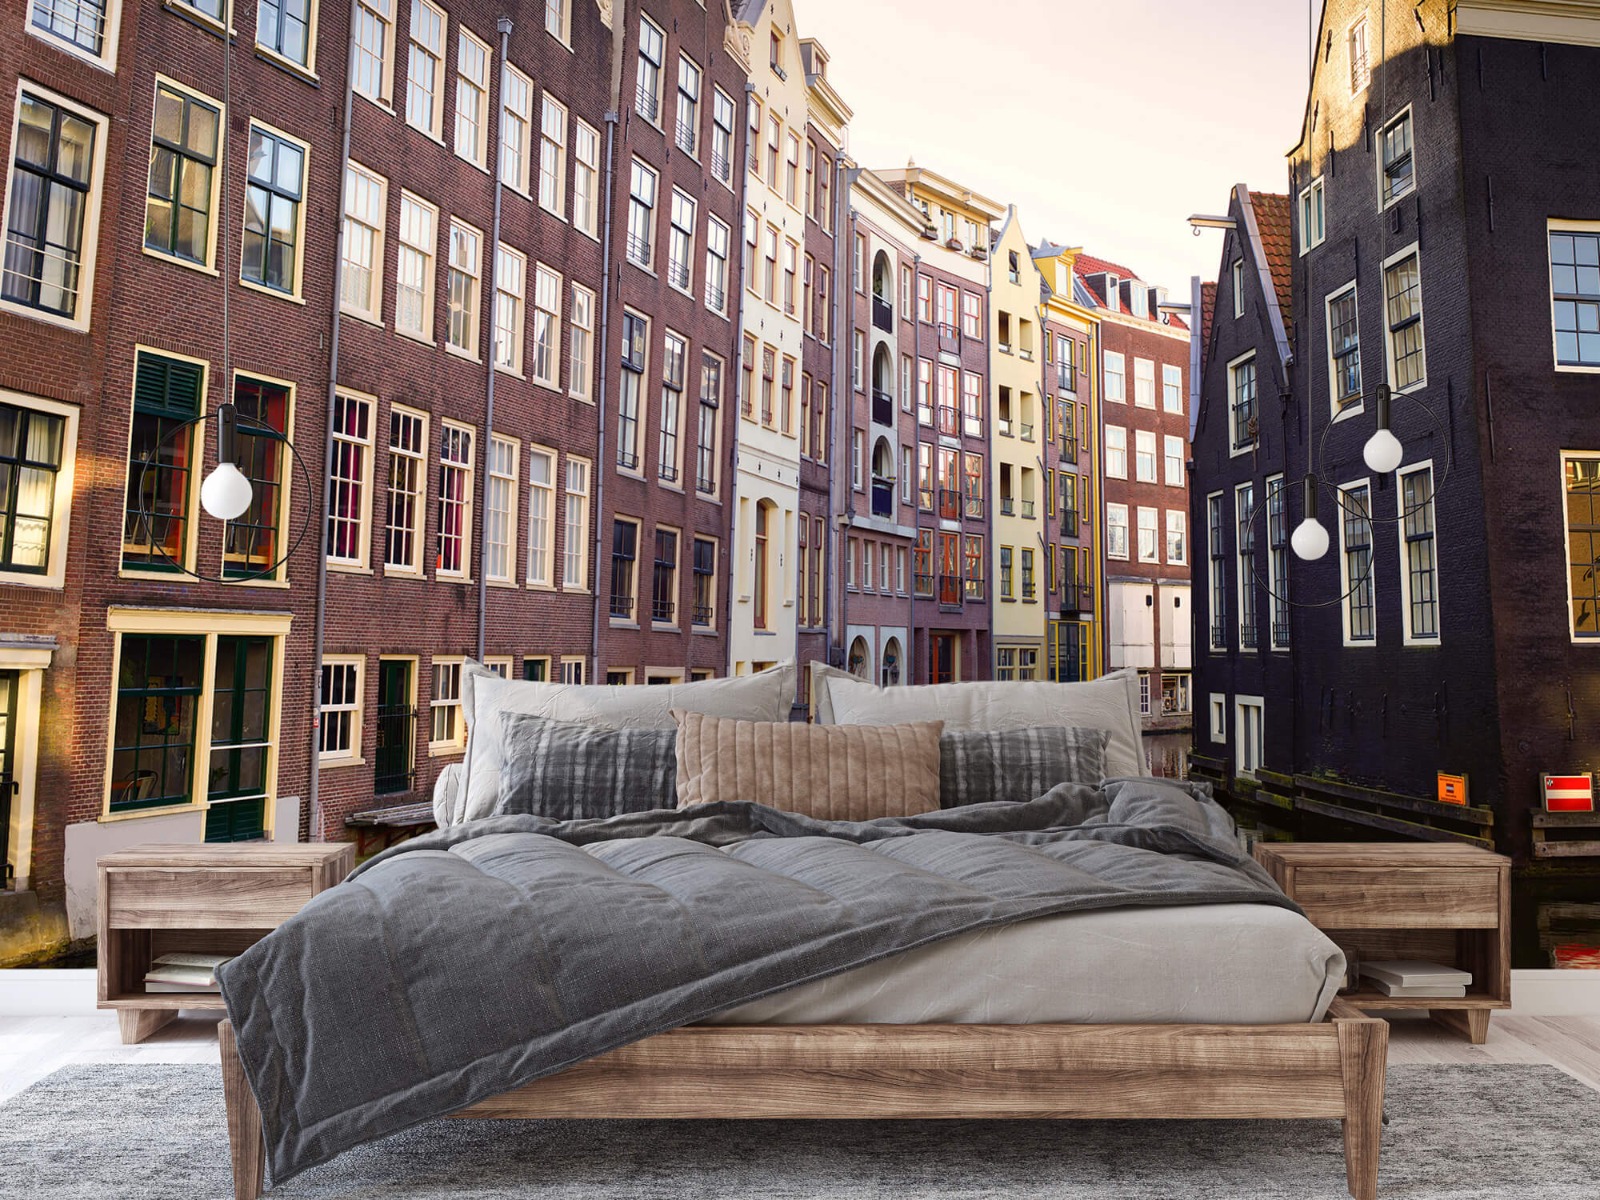 Gebouwen - Amsterdamse huizen aan de gracht - Tienerkamer 2